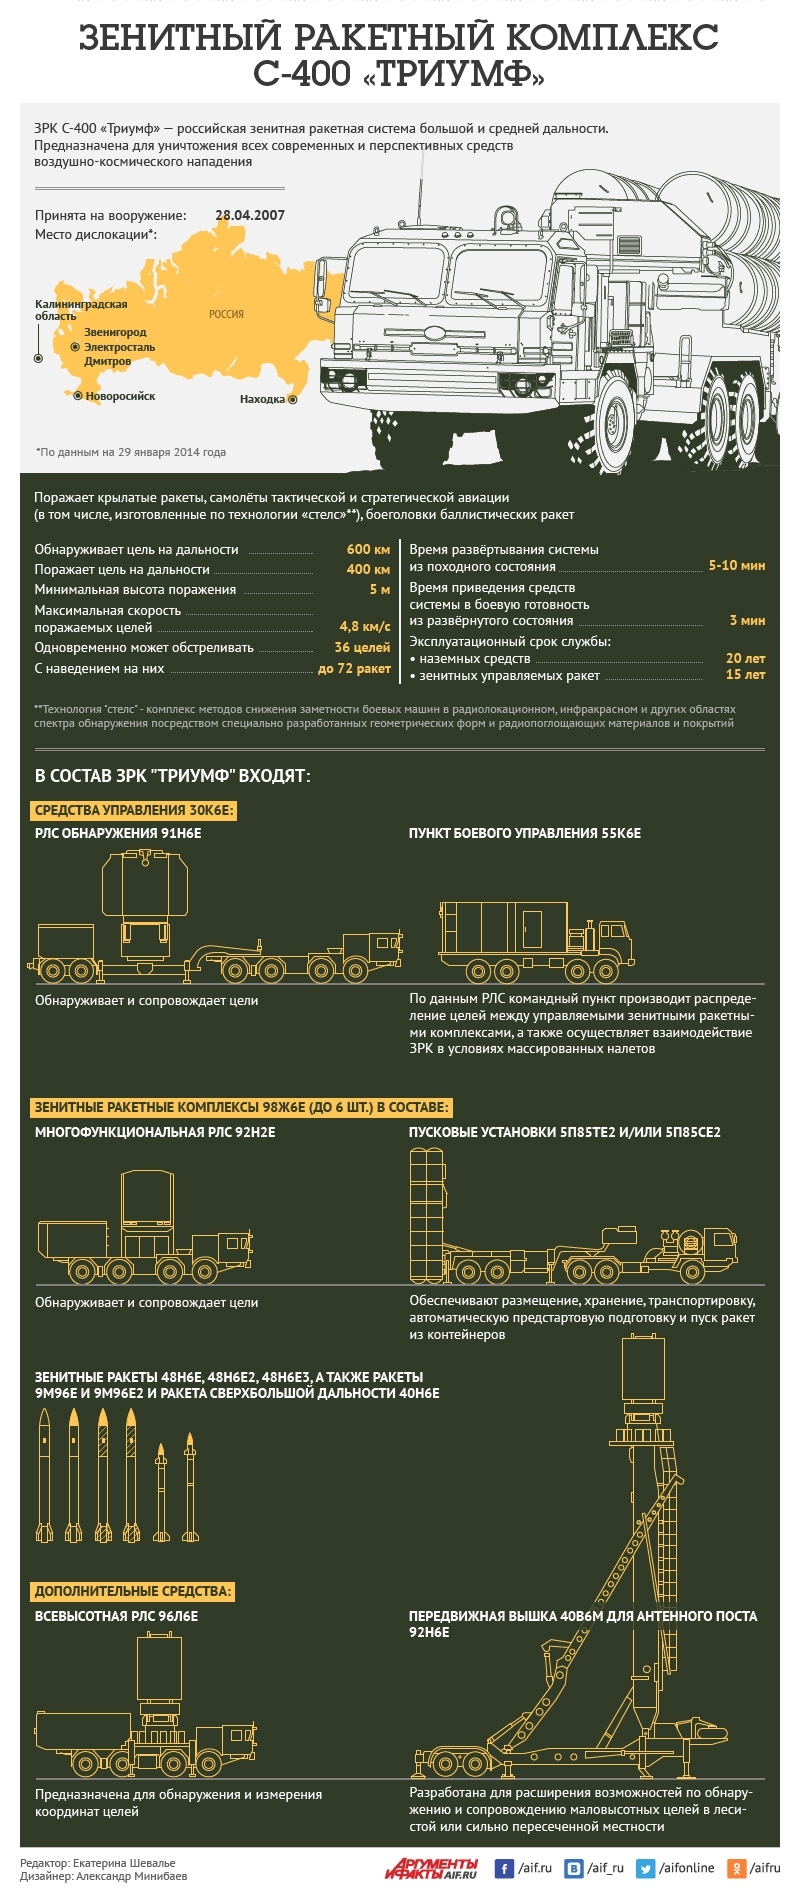 Как устроен зенитный ракетный комплекс С-400 «Триумф»? Инфографика